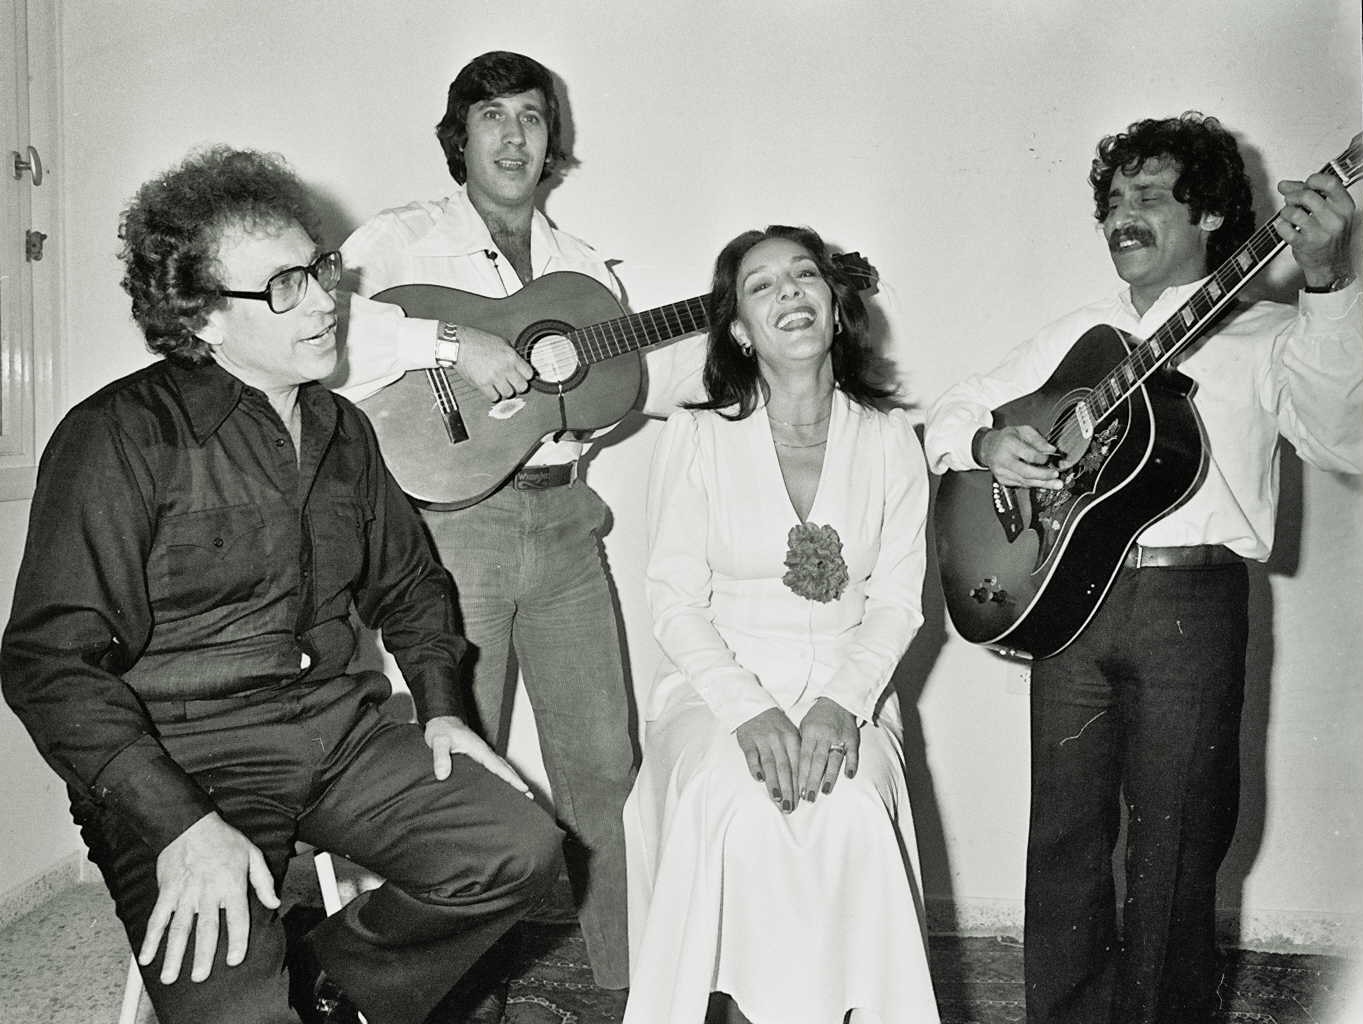 Dan Almagor and his ensemble before his trip abroad, 1982